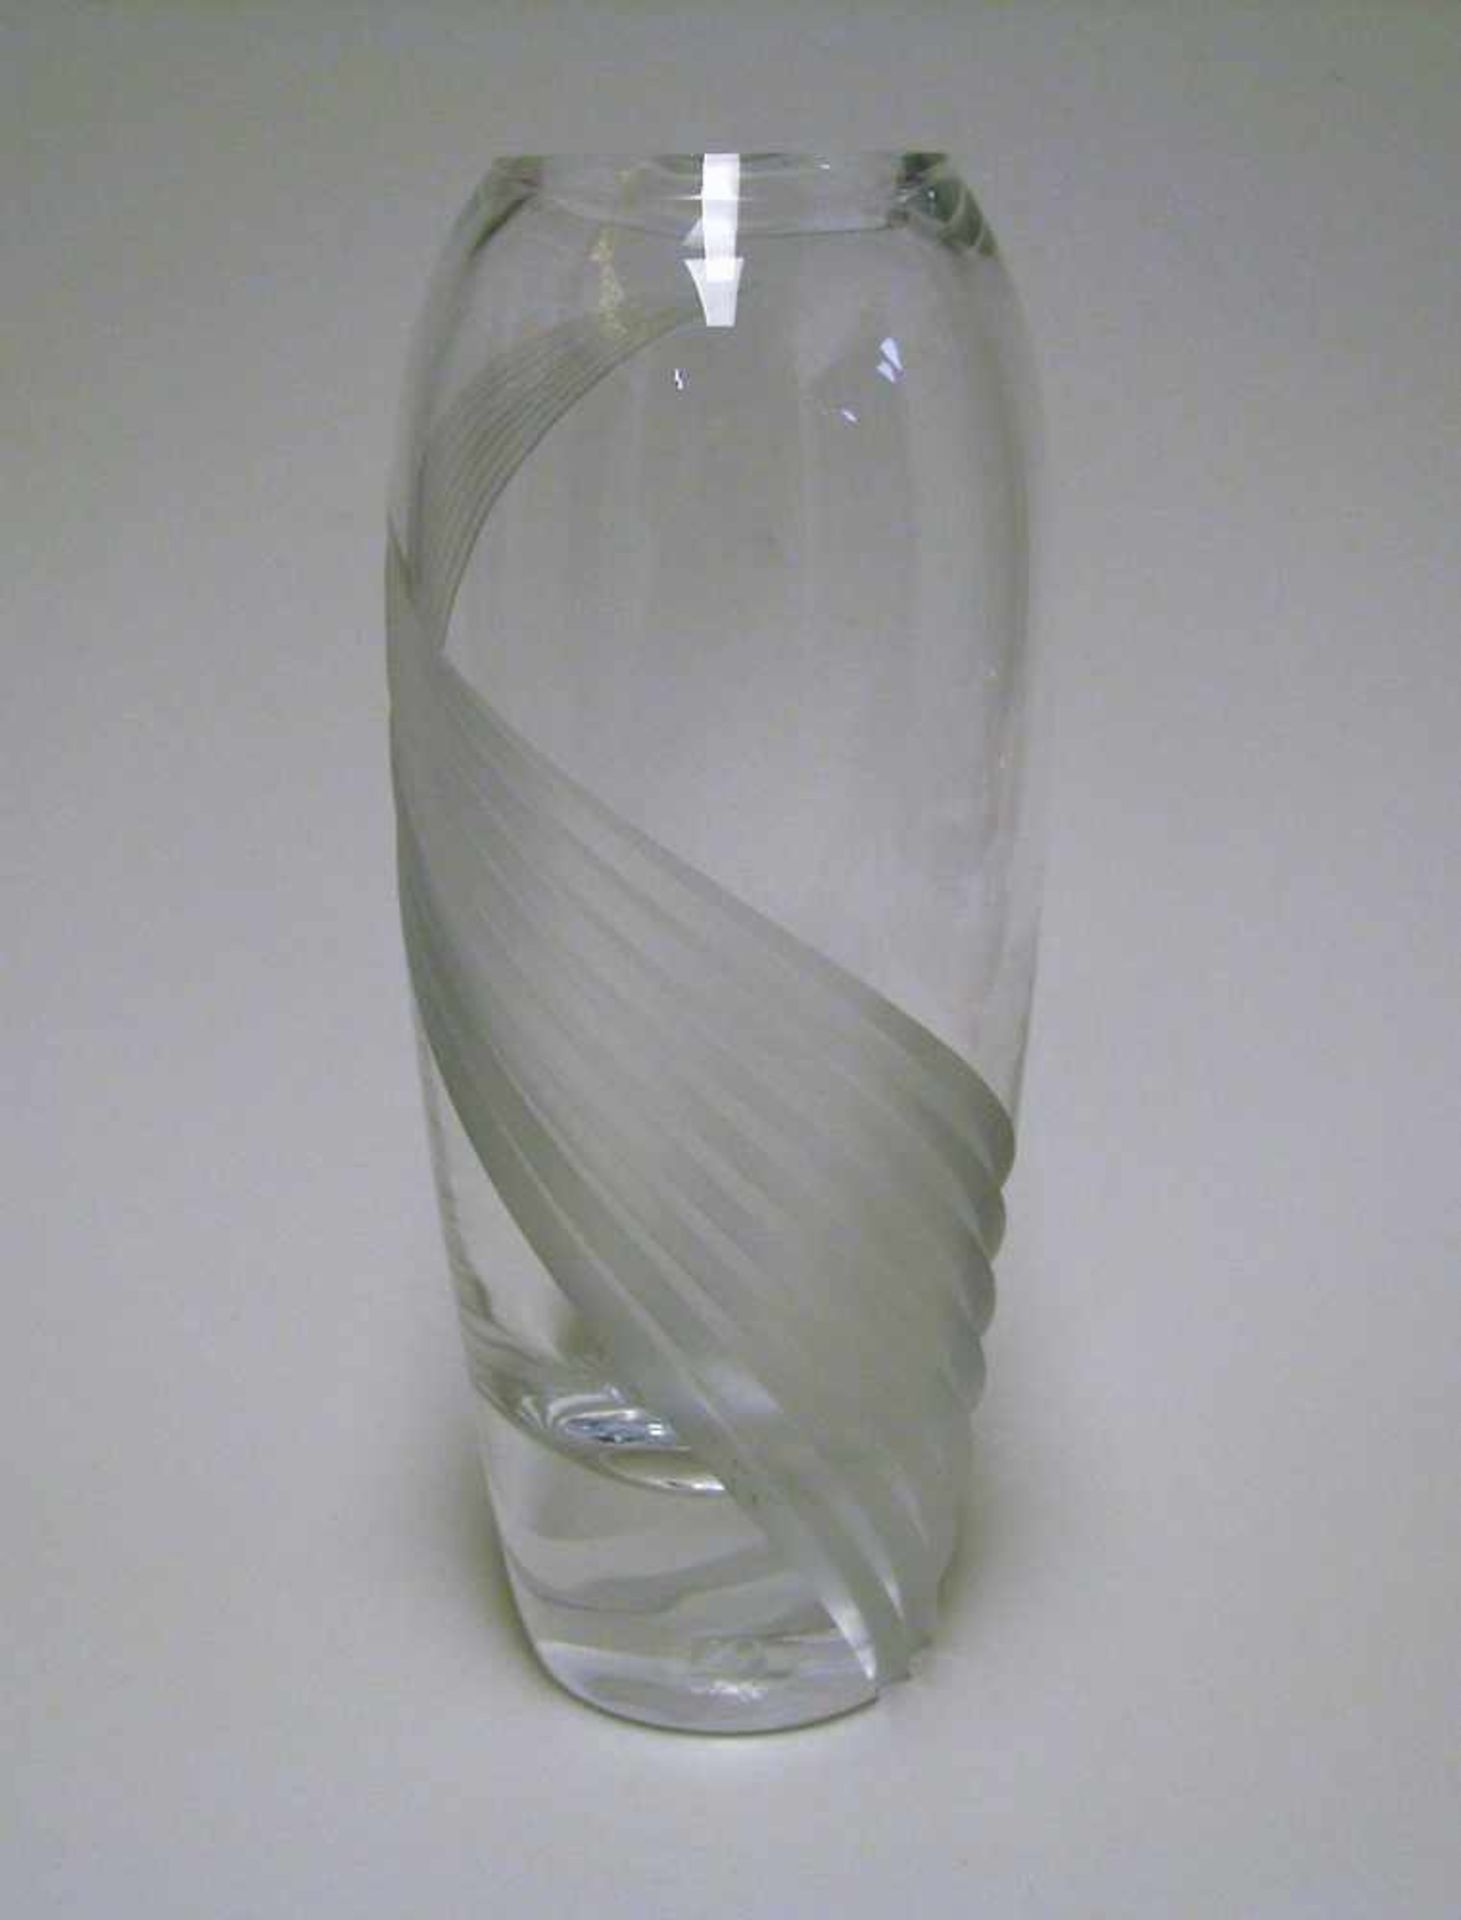 Designer-Vase, USA, Lenox, farbloses Kristallglas beschliffen, h 22 cm, d 9 cm.- - -19.00 % buyer'